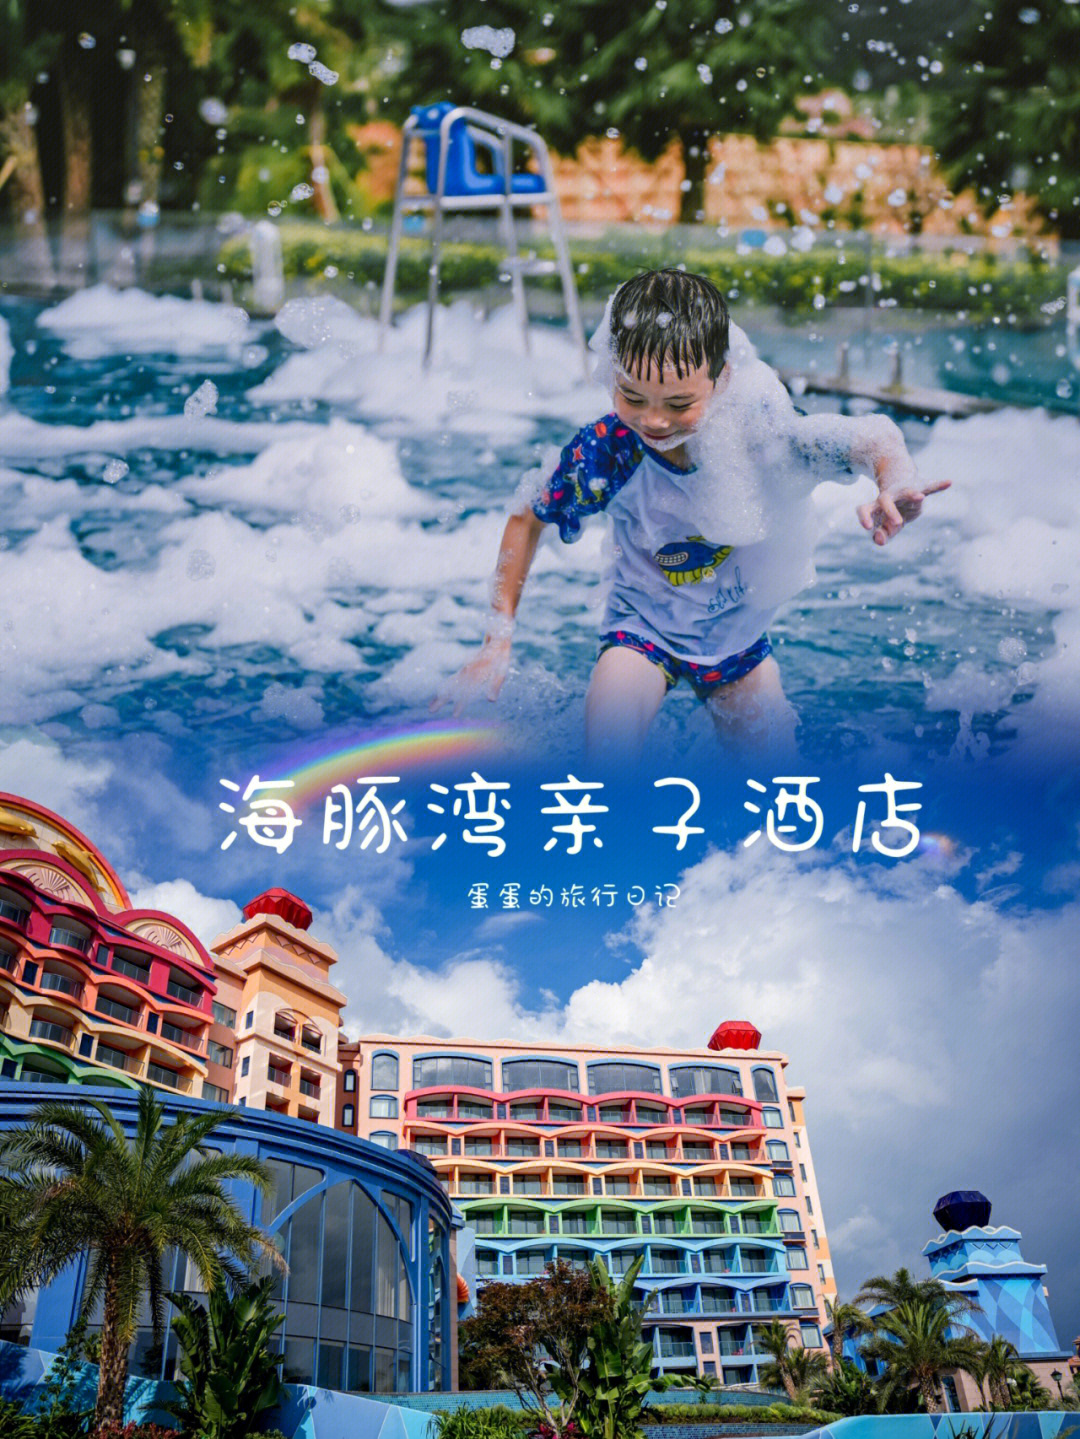 张家港塘桥海豚湾酒店图片